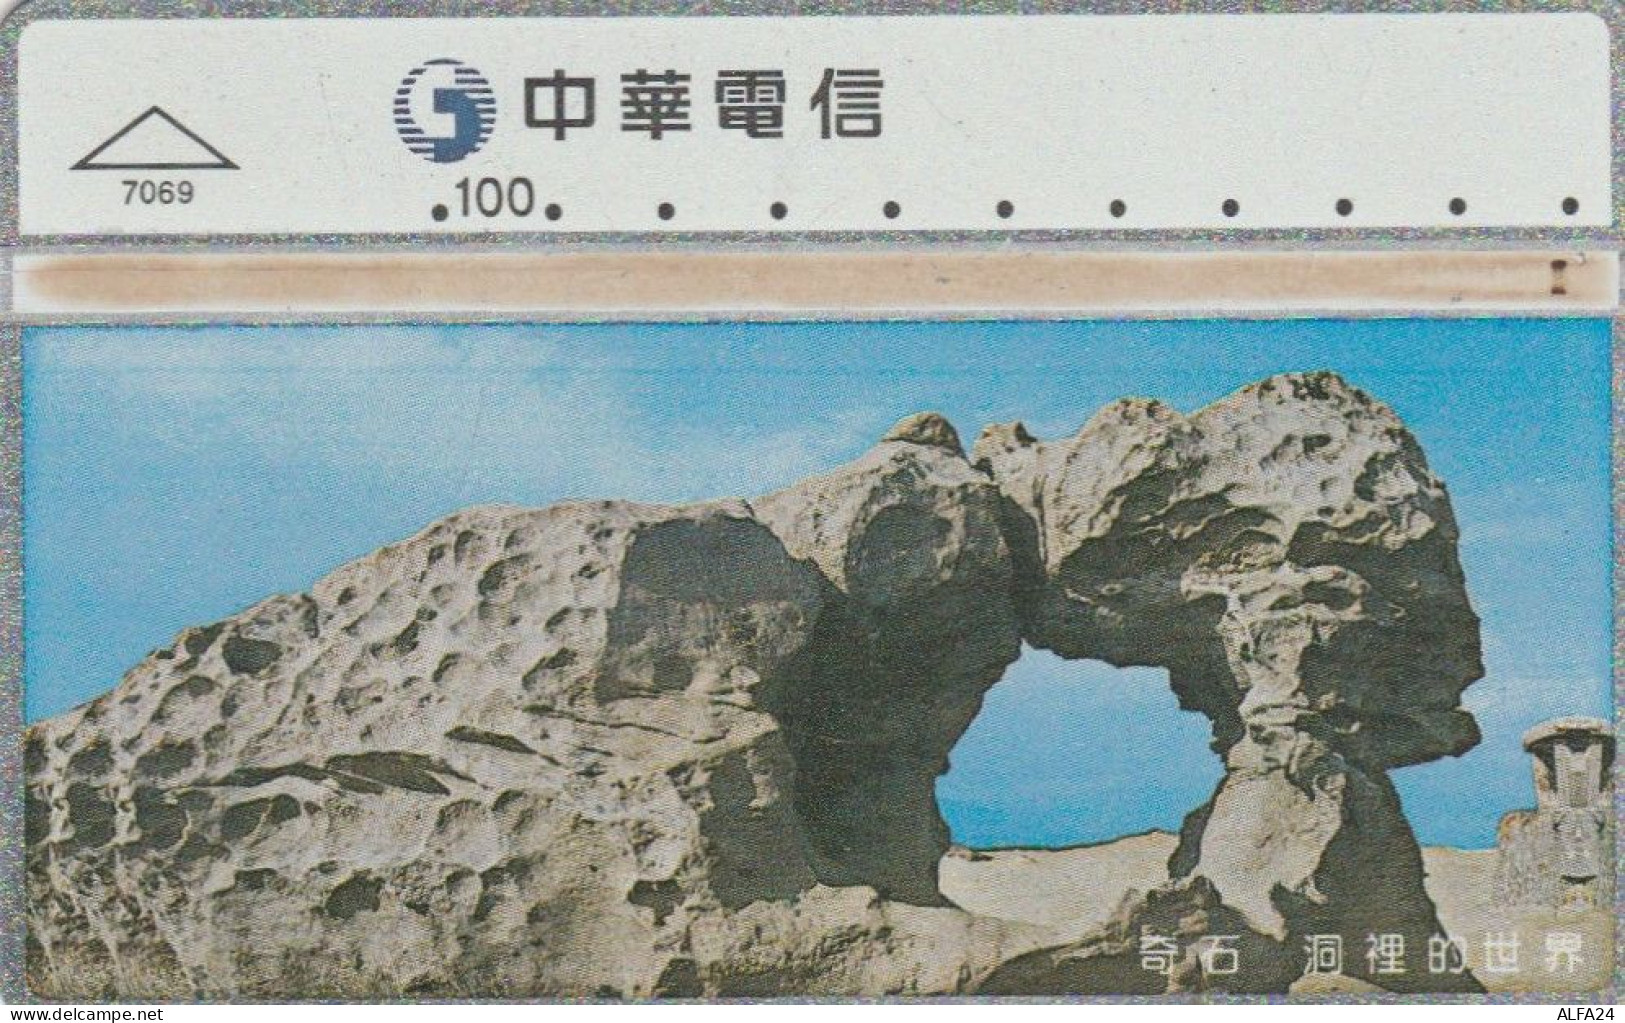 PHONE CARD TAIWAN (E45.10.3 - Taiwan (Formosa)